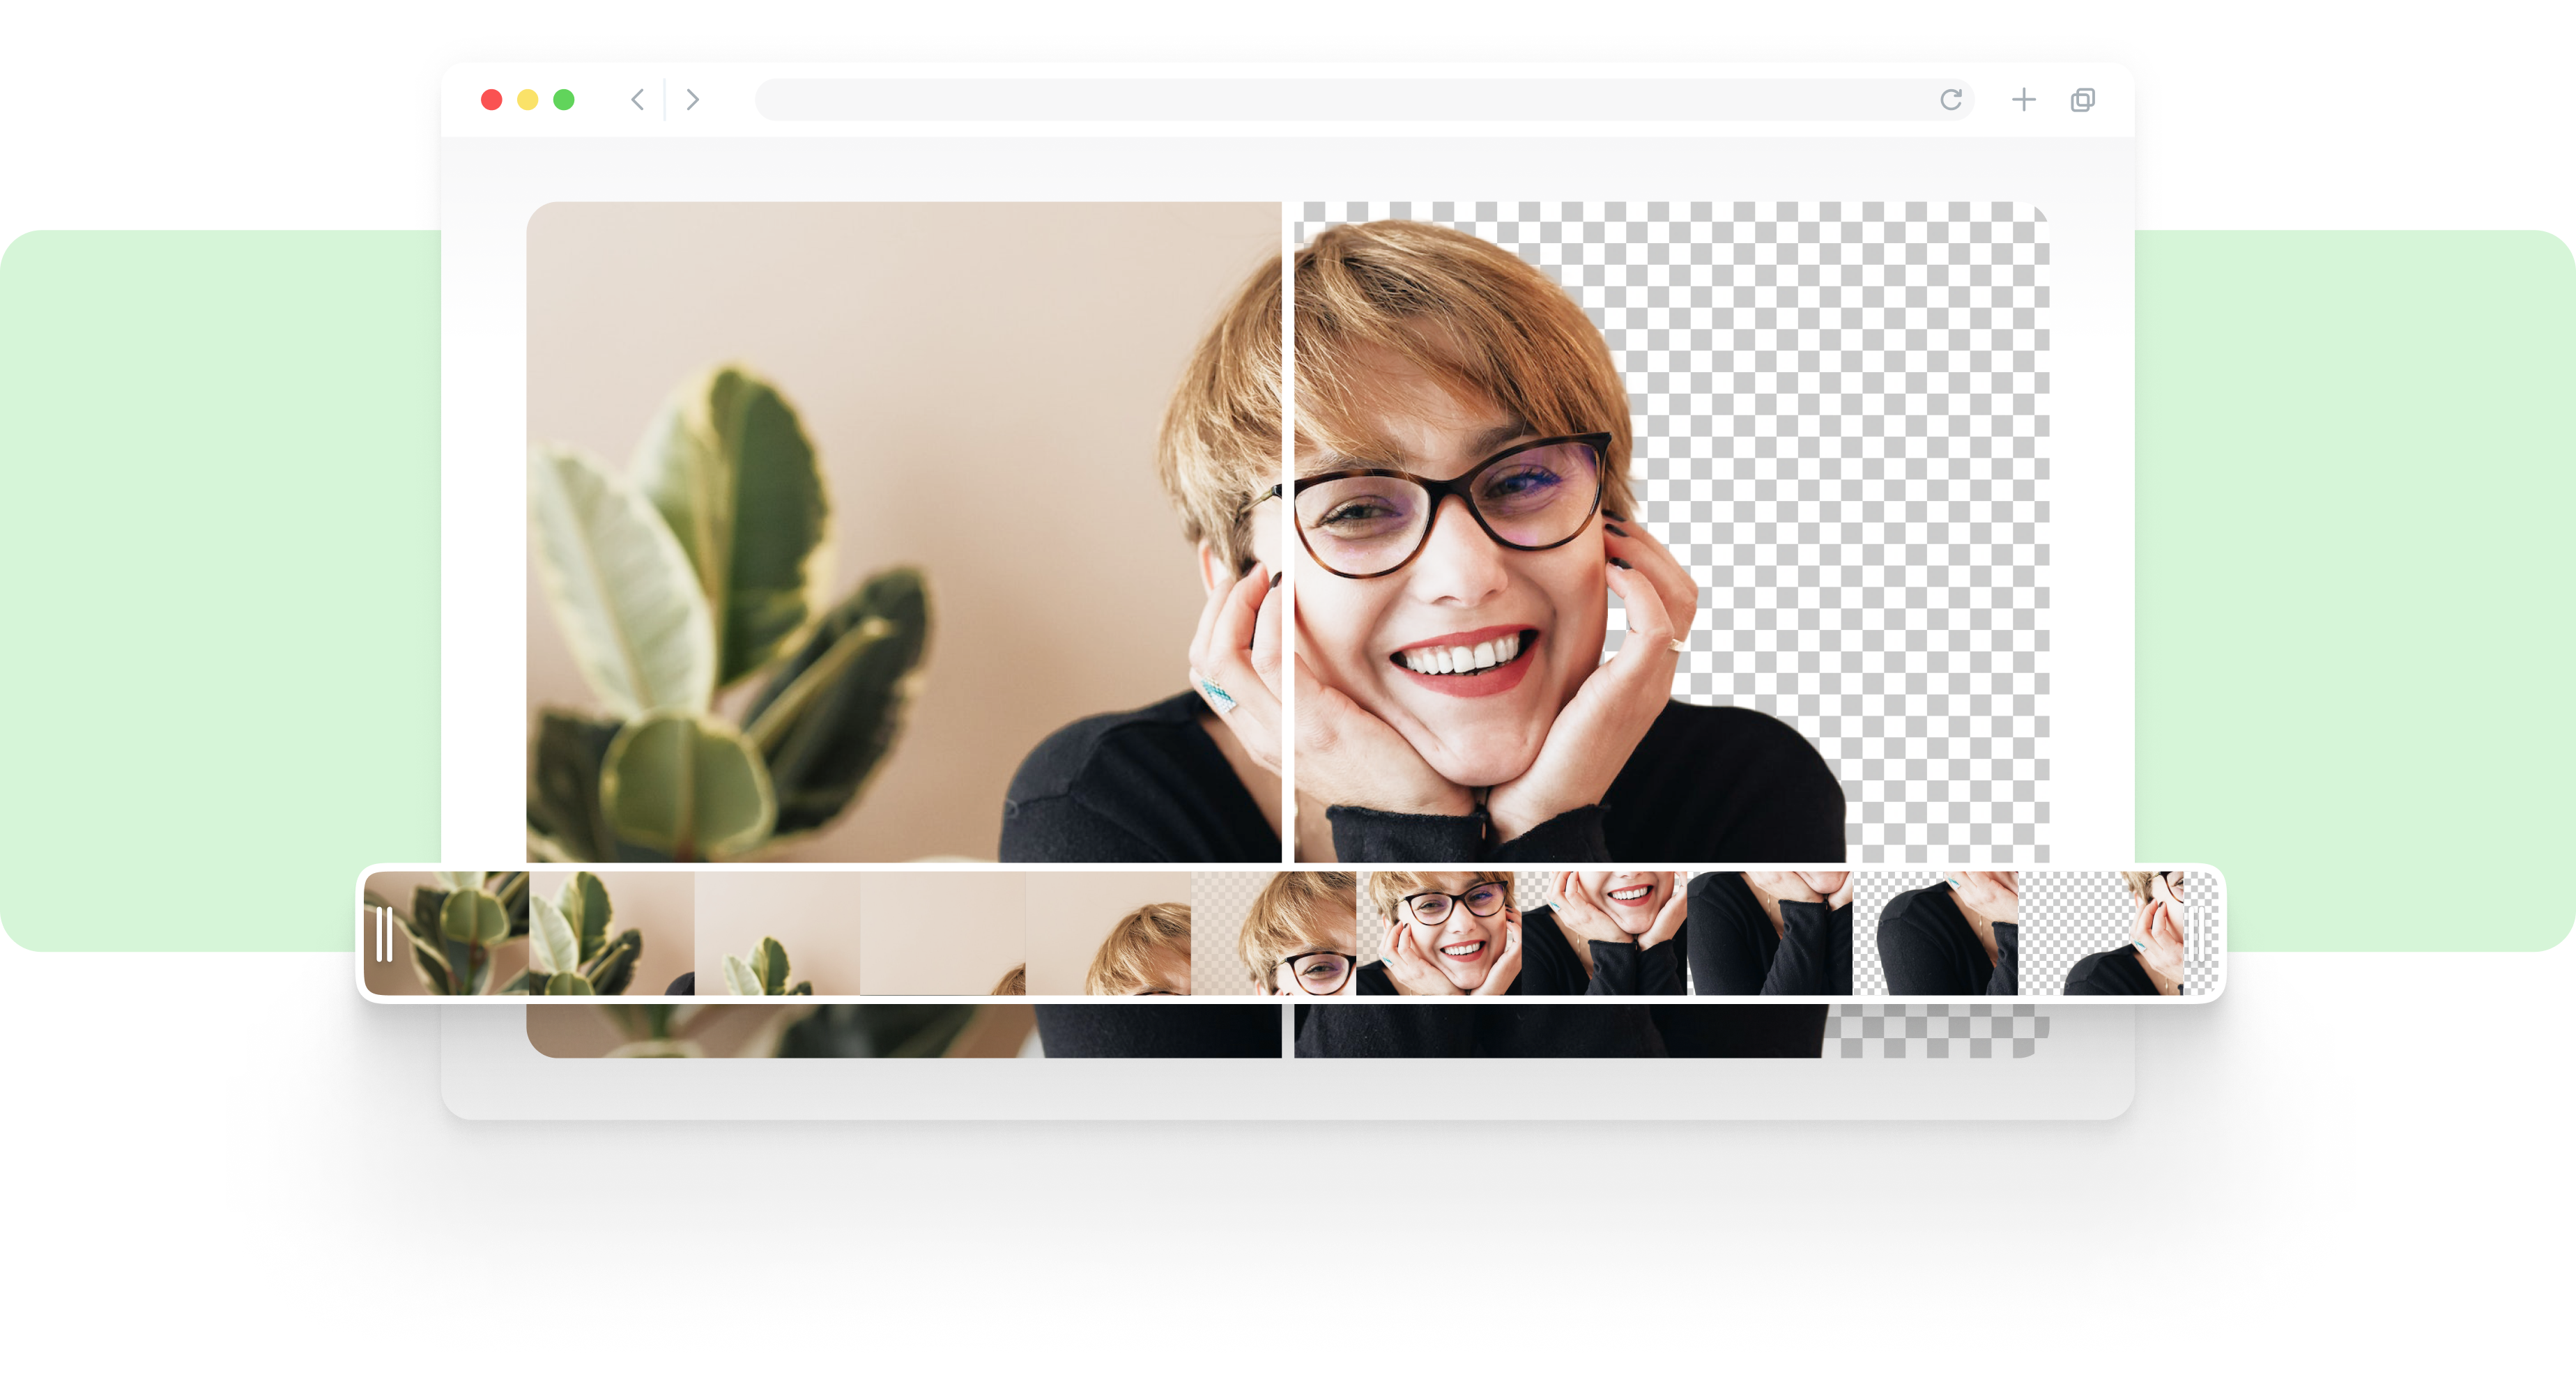 Bạn muốn xóa nền trong các video webcam của mình mà không cần sử dụng màn hình xanh? Hãy khám phá phần mềm chuyên dụng với các tính năng tốt nhất để giúp bạn tạo ra những video chuyên nghiệp và tuyệt vời.